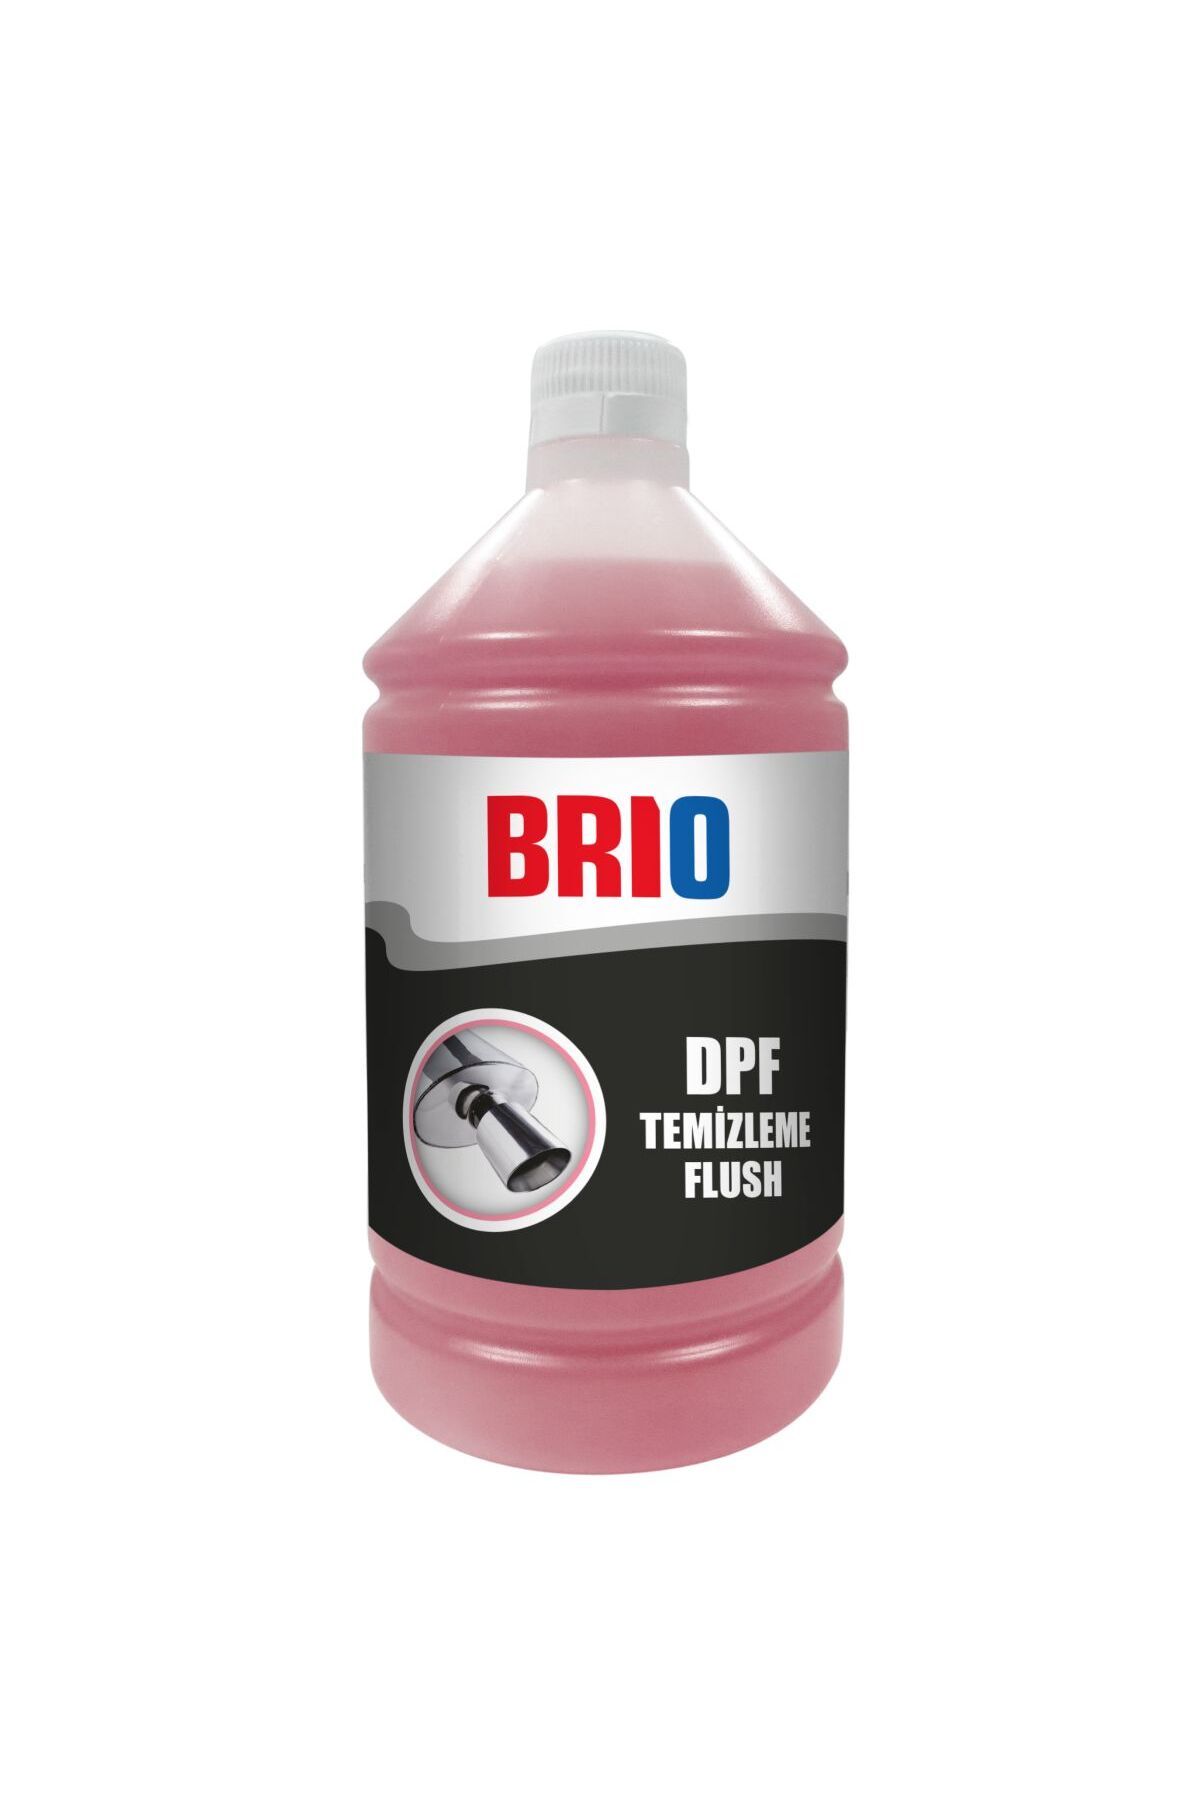 Brio Dpf Dizel Partikül Filtre Temizleme 1 L